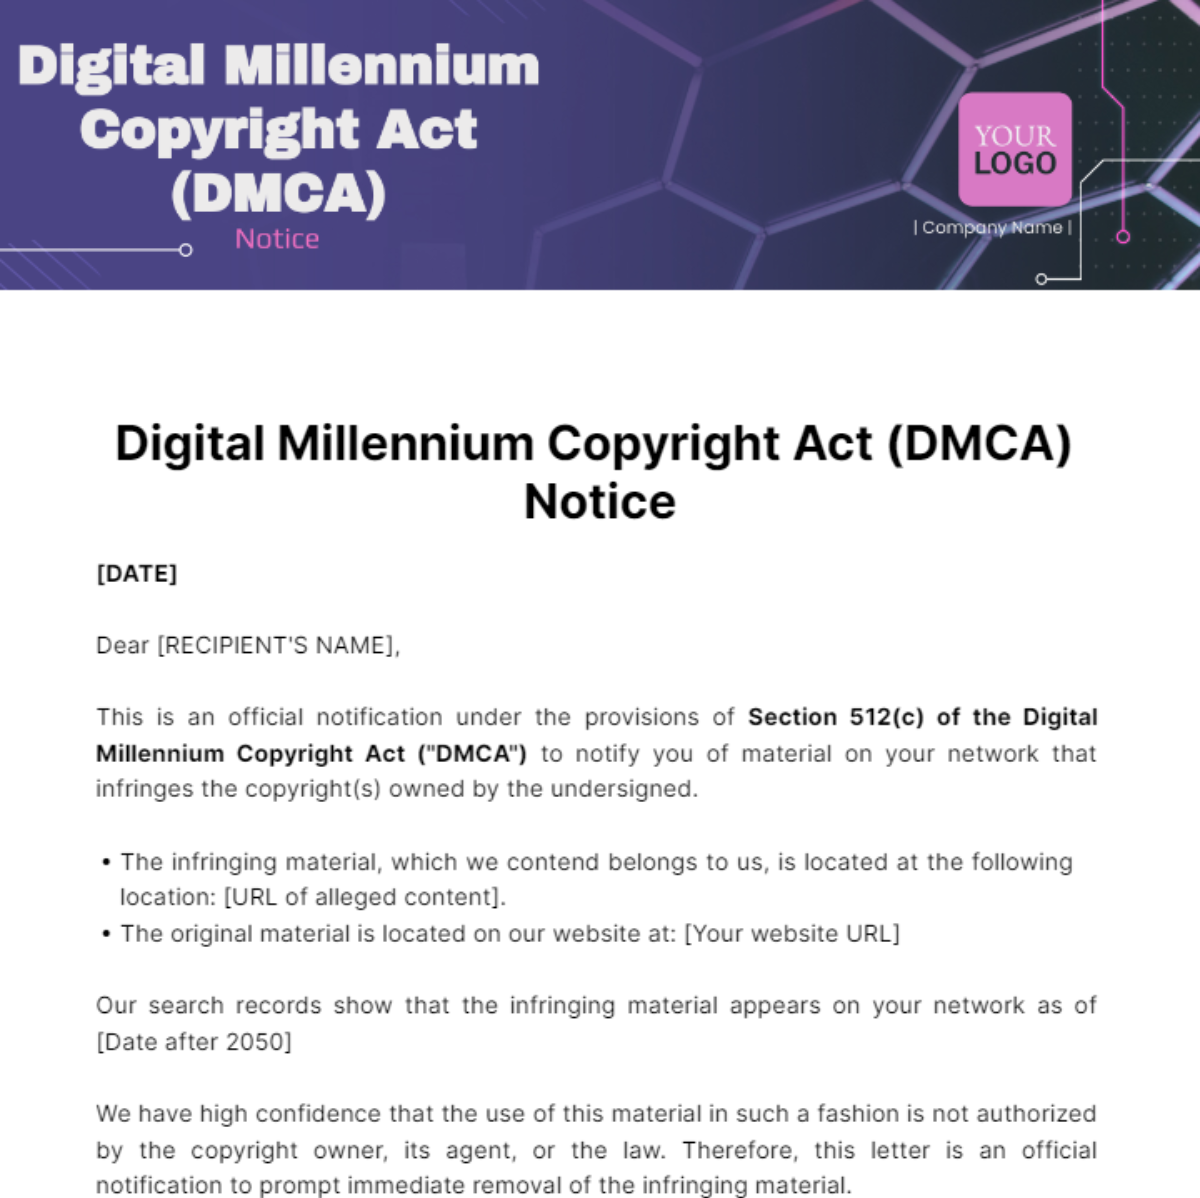 Digital Millennium Copyright Act (DMCA) Notice Template